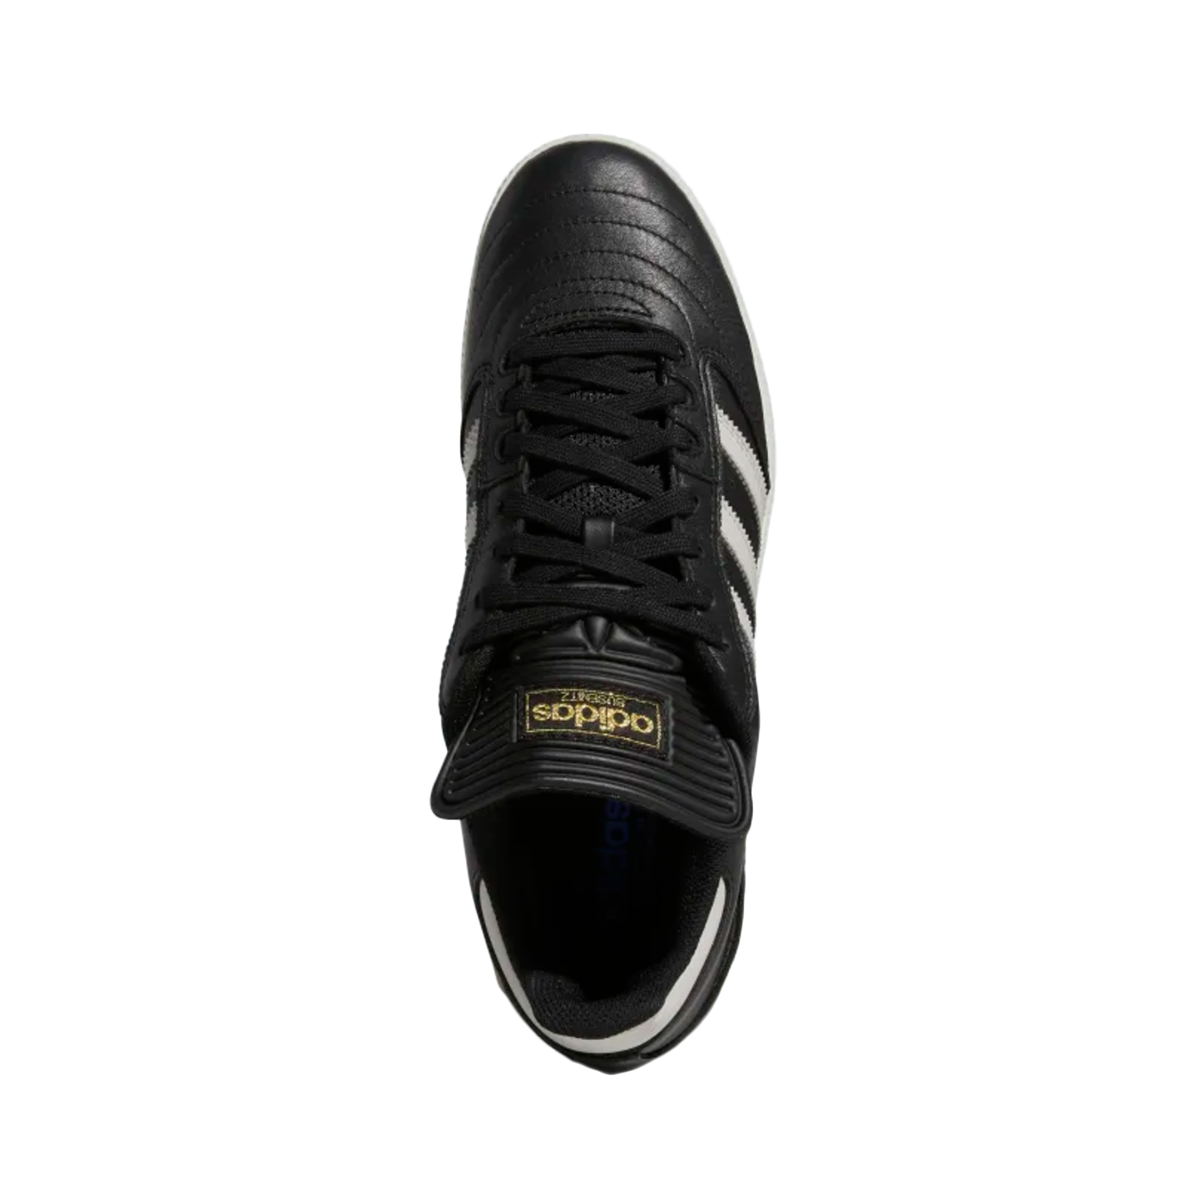 Descomponer Atrevimiento sí mismo Adidas Busenitz Shoes - Core Black / Grey One / Gold Metallic - Directive  Boardshop